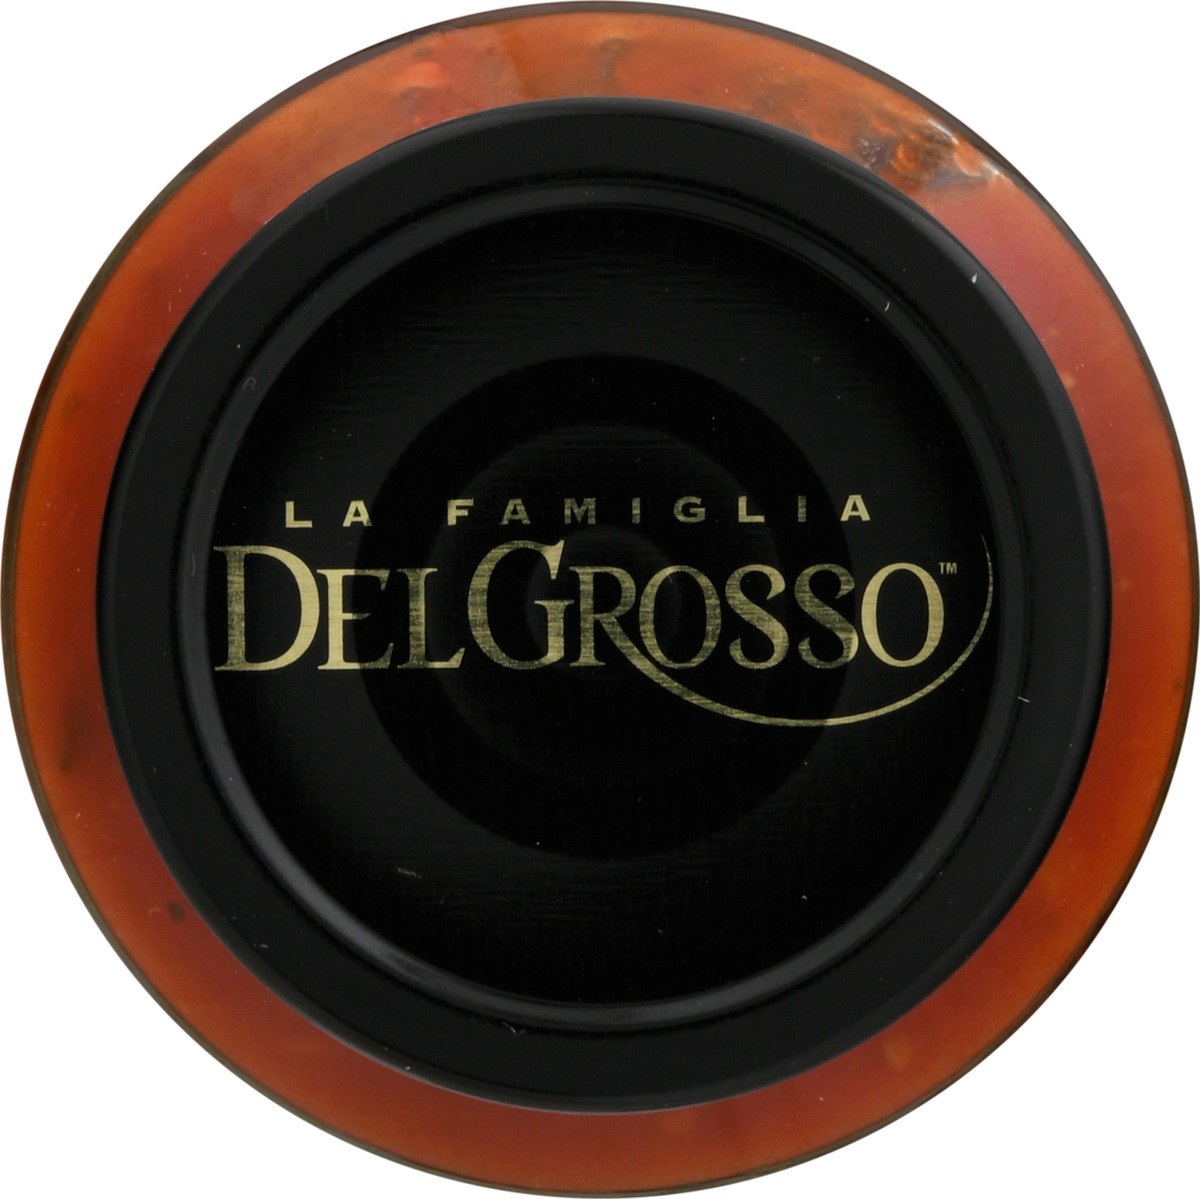 slide 6 of 14, La Famiglia DelGrosso Del Grosso Uncle Fred's Fireworks Pasta Sauce, 16 oz